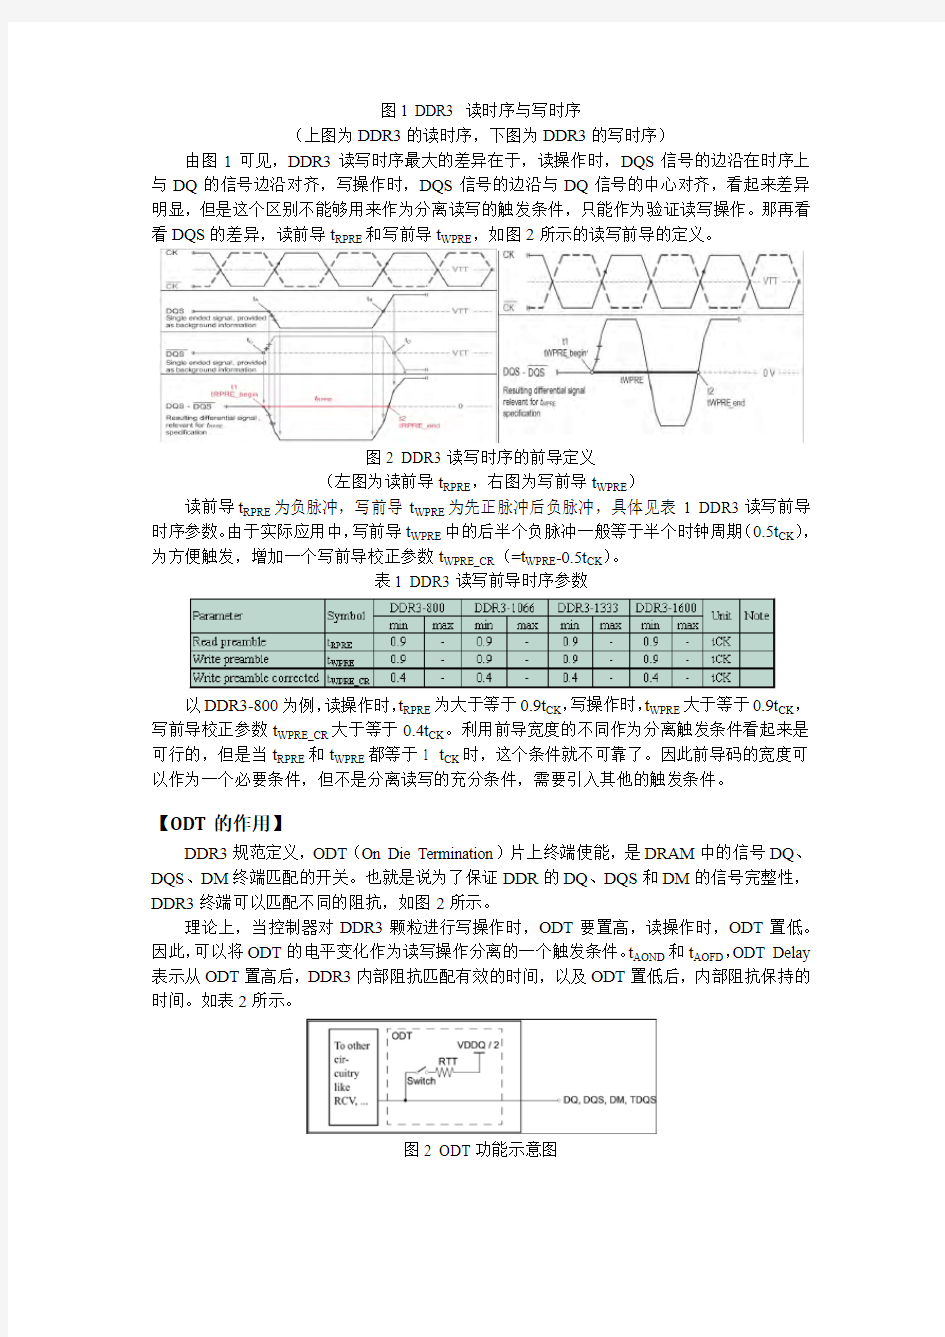 一种新颖的DDR3读写分离与眼图测试方法